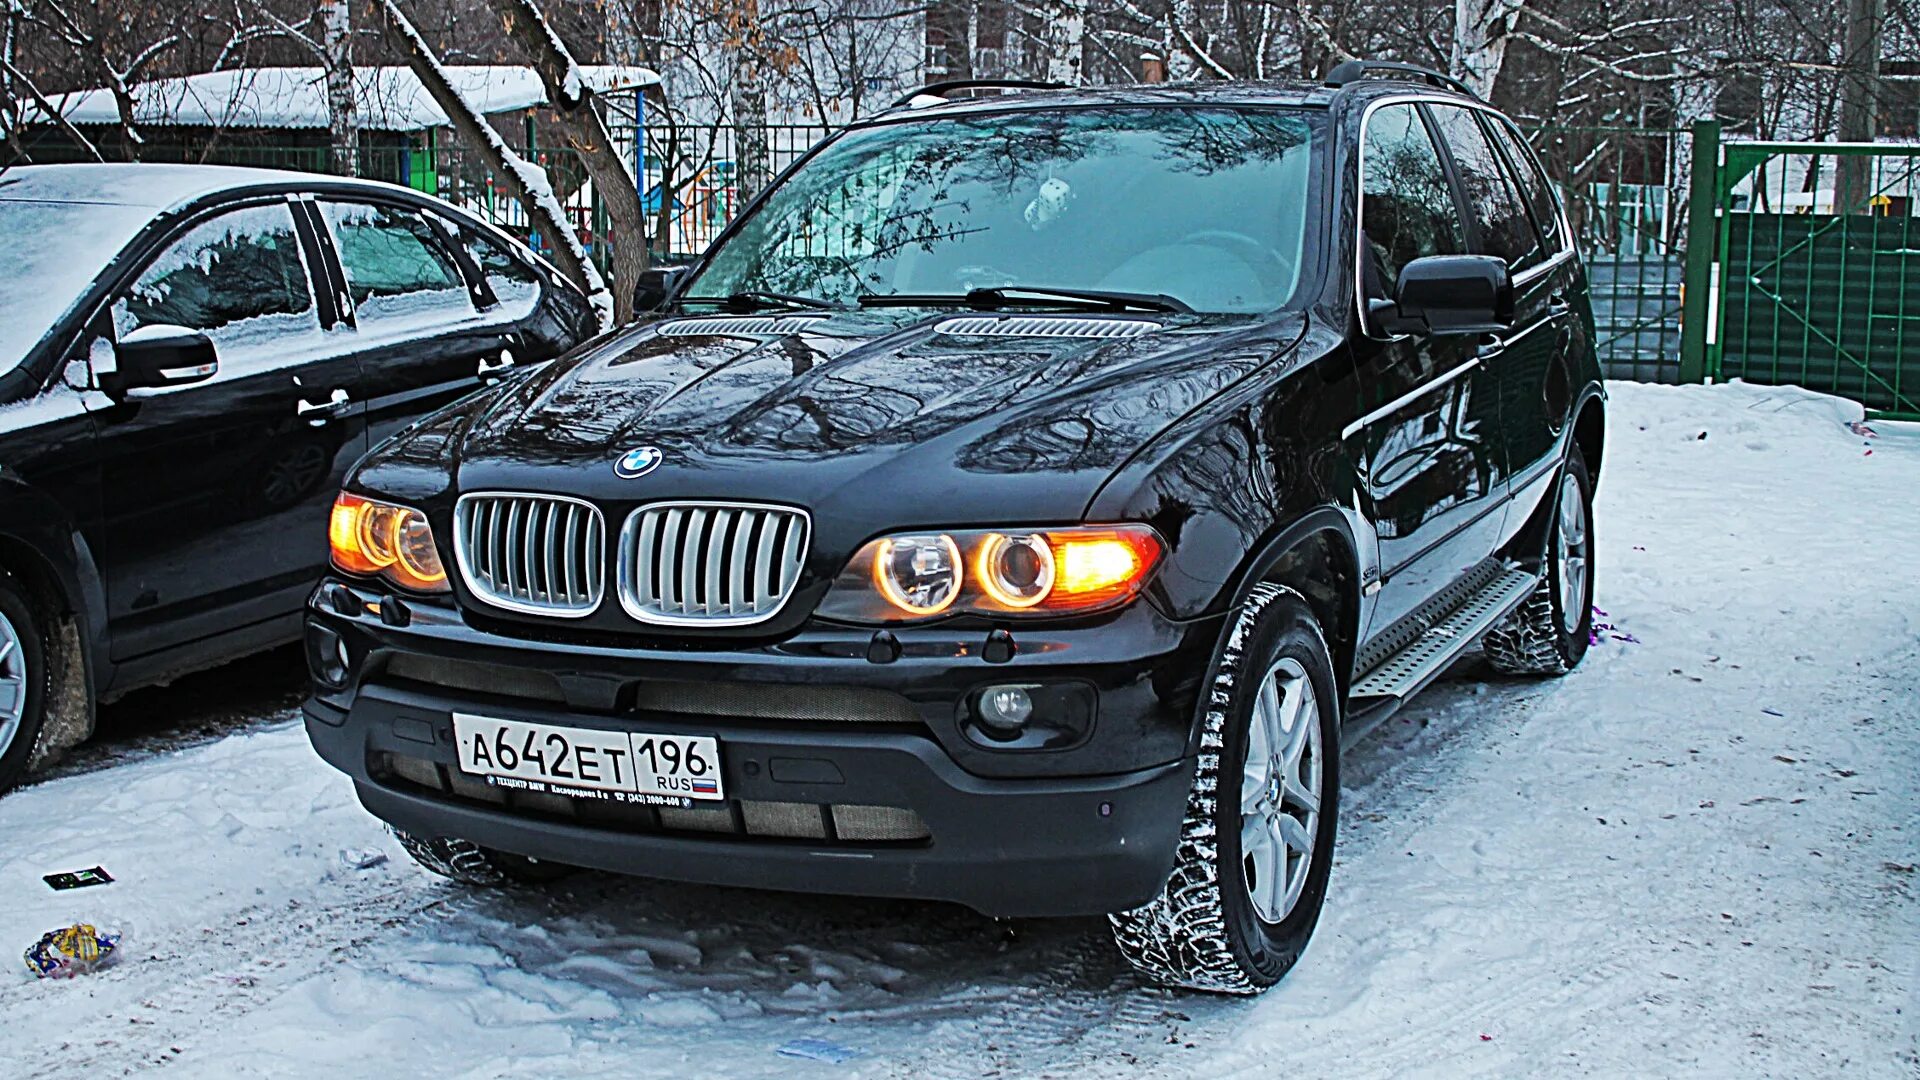 BMW x5 e53 2005. БМВ х5 е53 2005. БМВ x5 2005 года. X5 BMW x5 2005. Bmw x5 москва